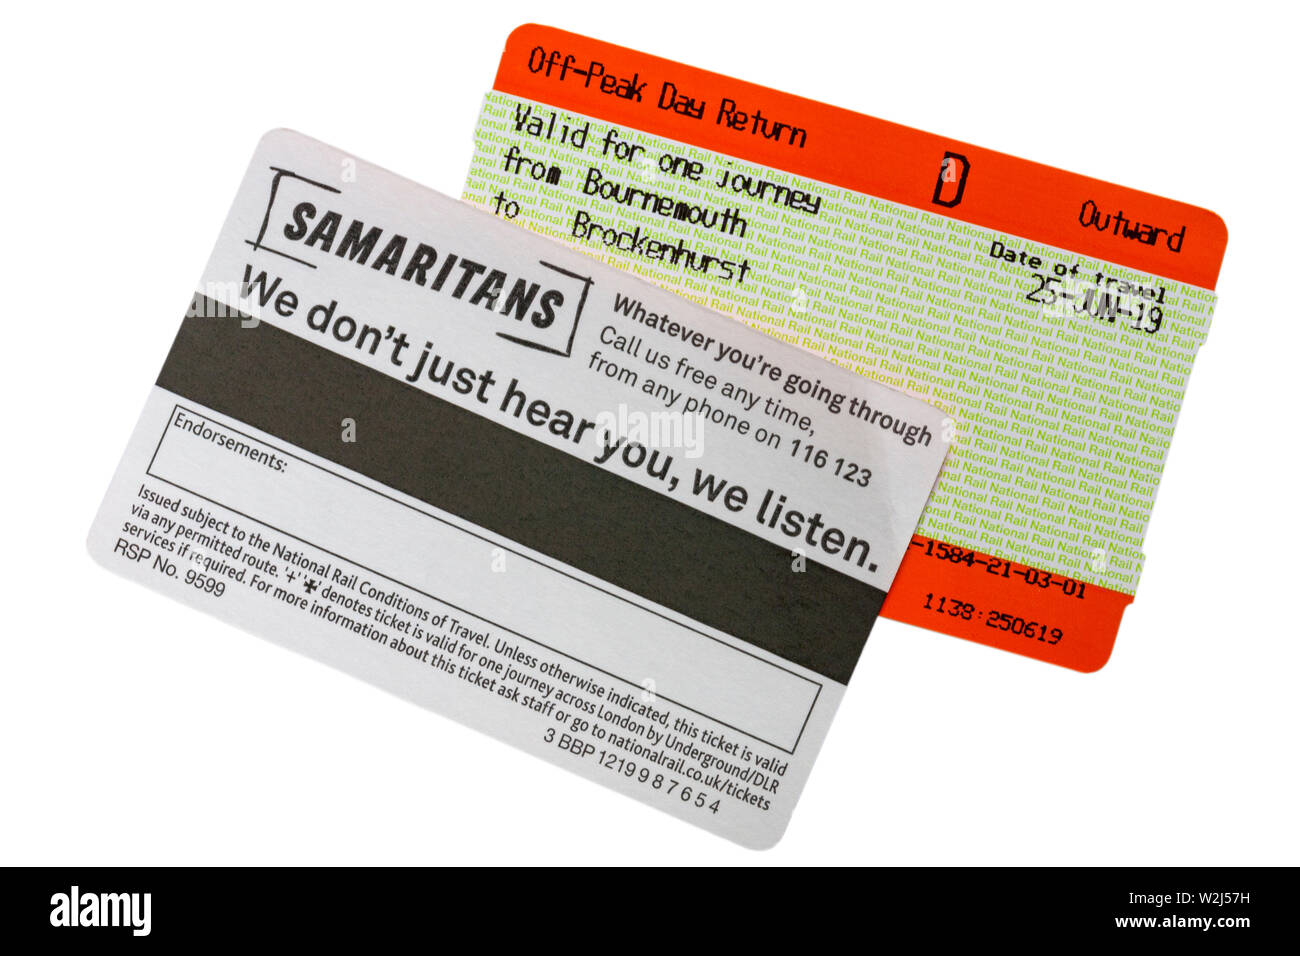 Samariter Wir lassen Sie nicht nur hören, wir hören - Informationen auf der Rückseite der Bahn Fahrkarte - was auch immer Sie durch rufen Sie uns jederzeit gehen Stockfoto